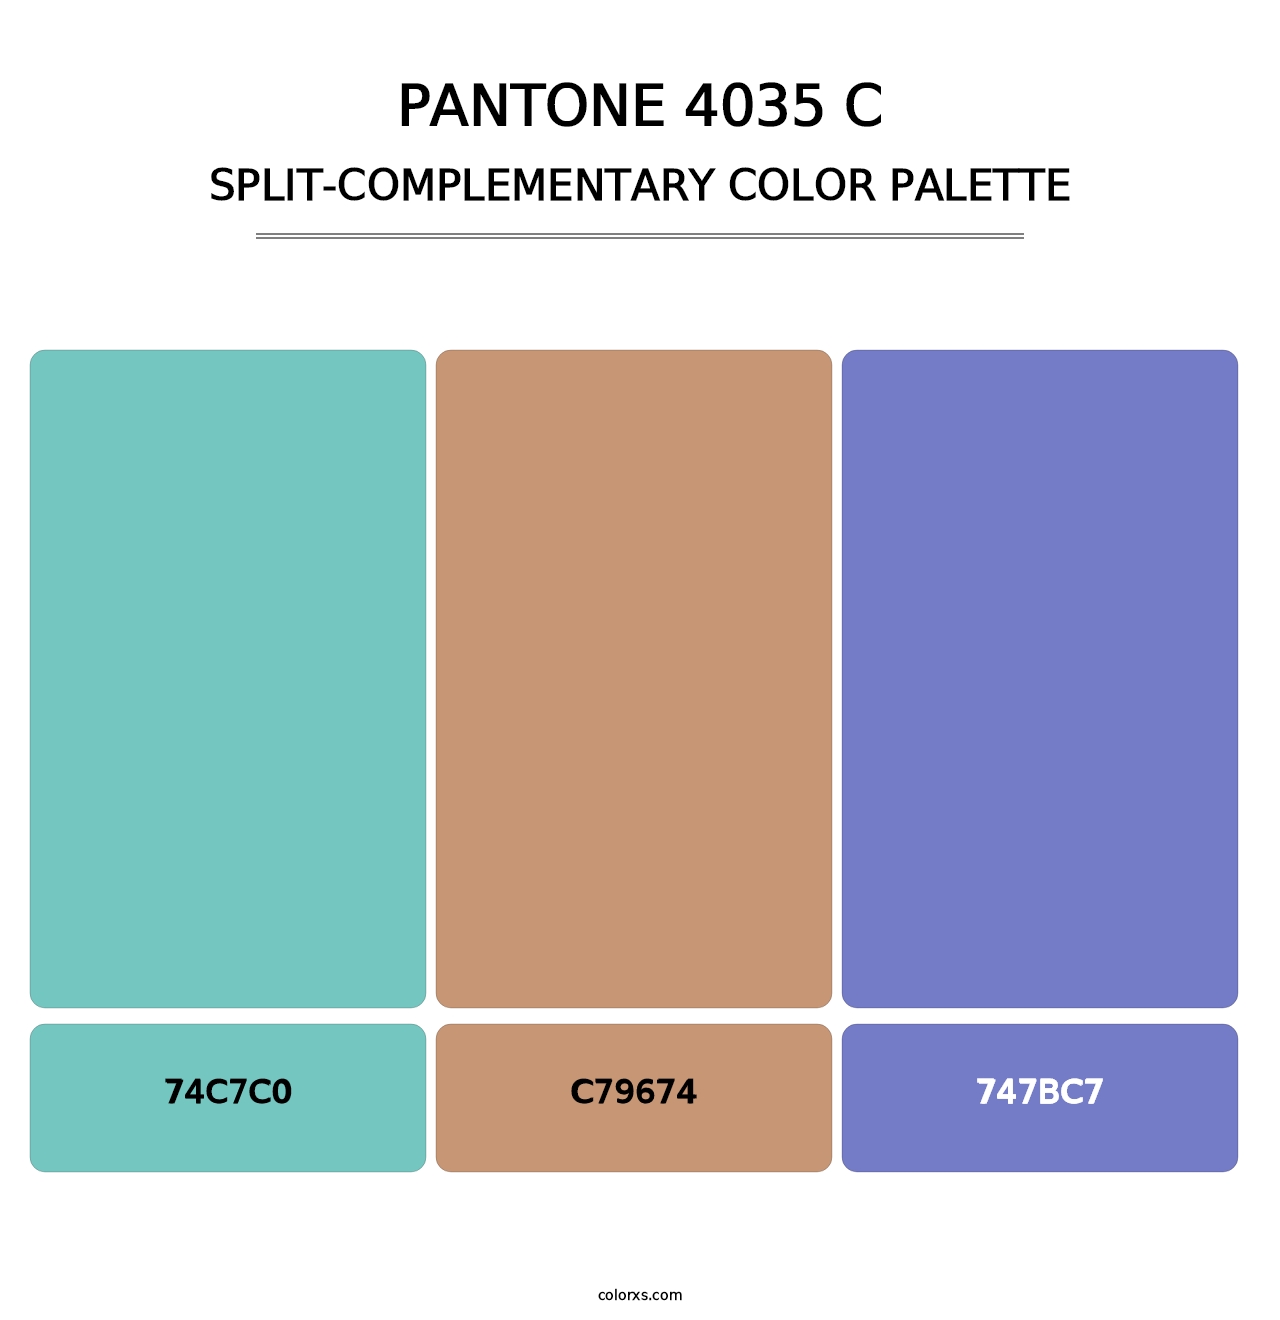 PANTONE 4035 C - Split-Complementary Color Palette